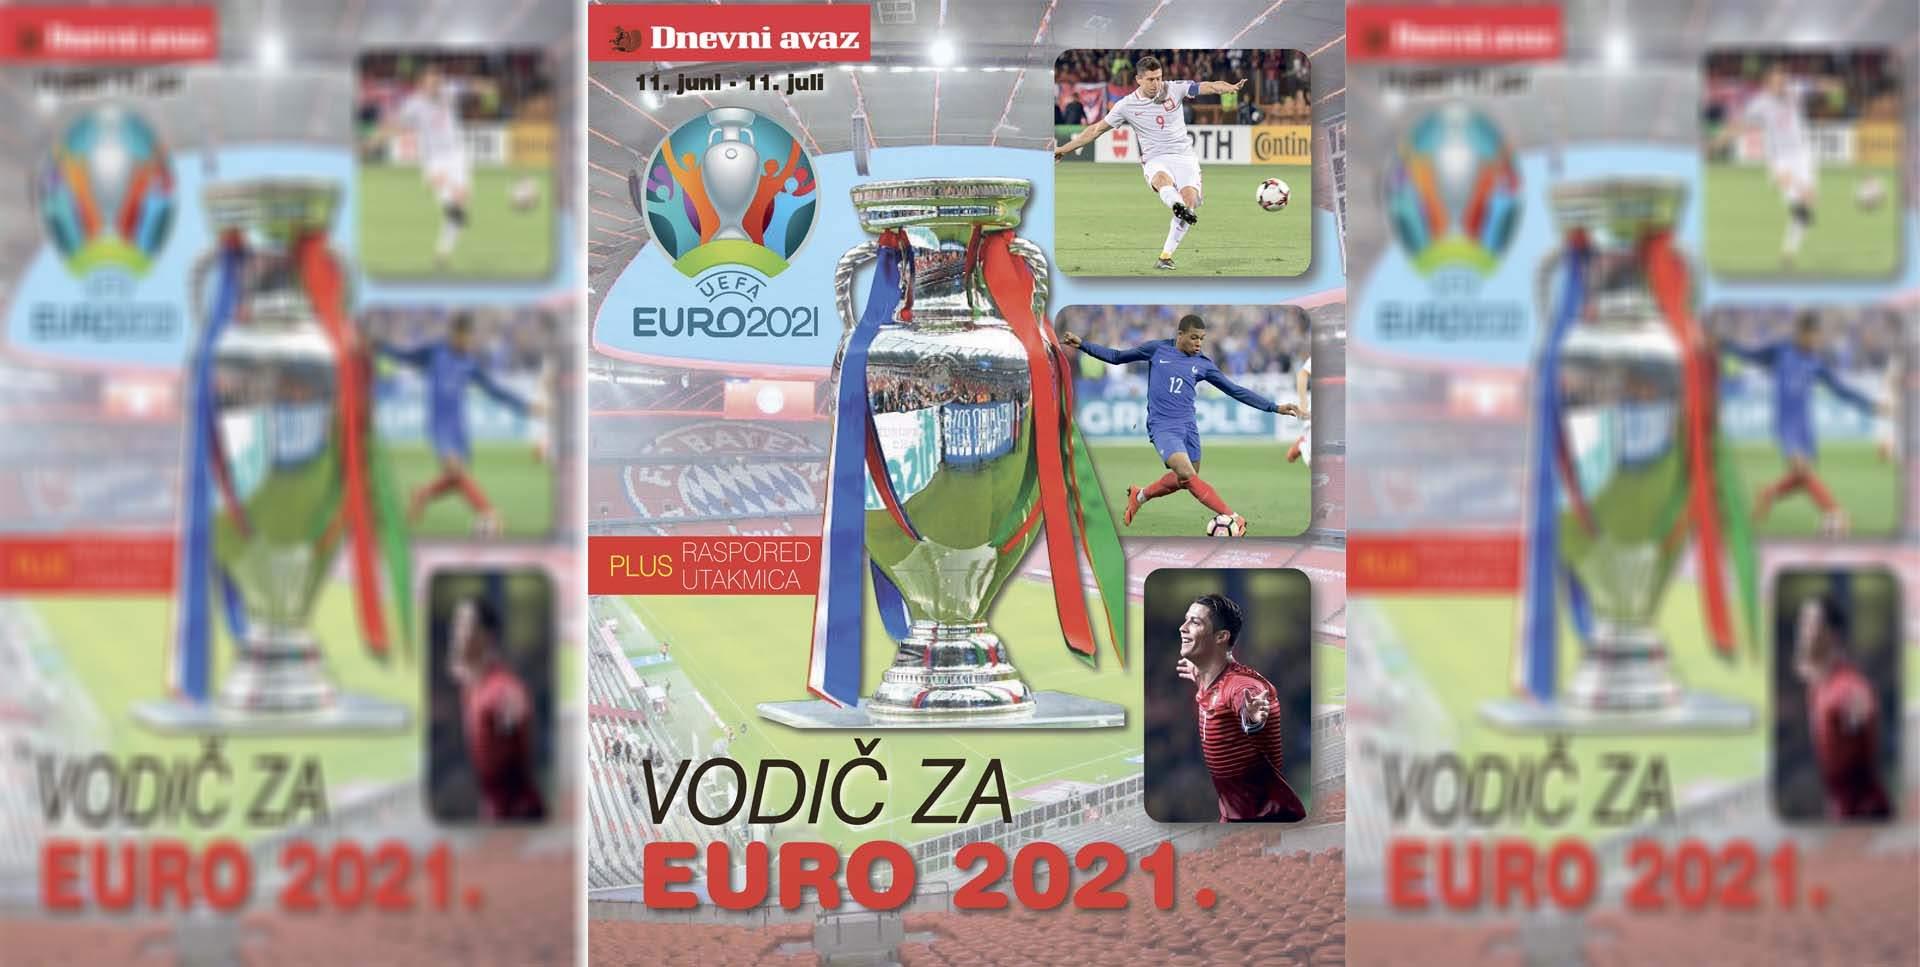 Danas u "Dnevnom avazu" specijalni prilog: Vodič za Euro 2021.